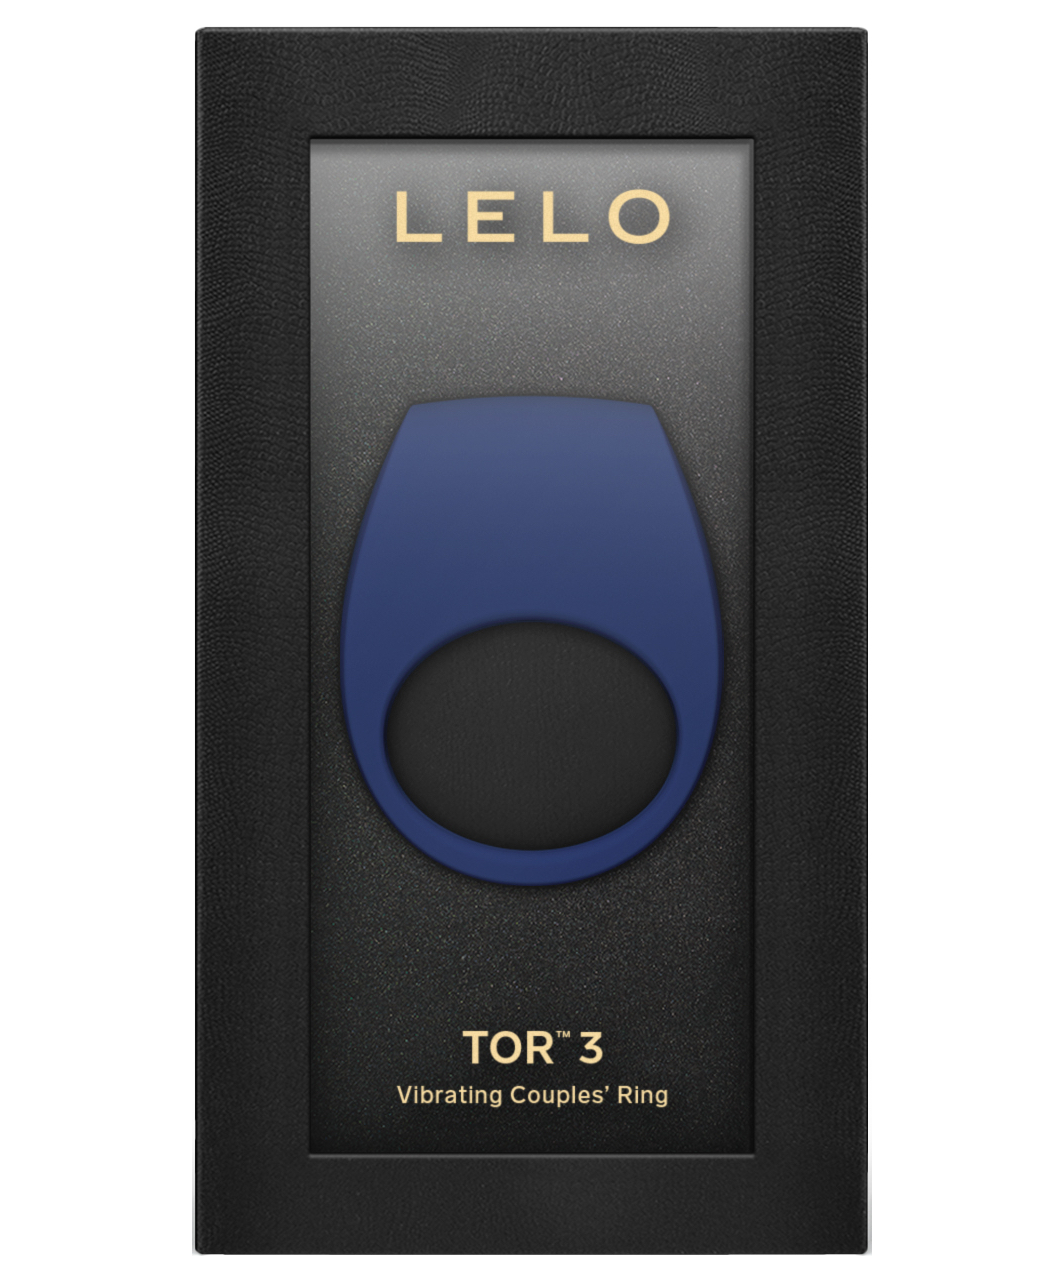 LELO Tor 3 Vibrating Couple's Ring